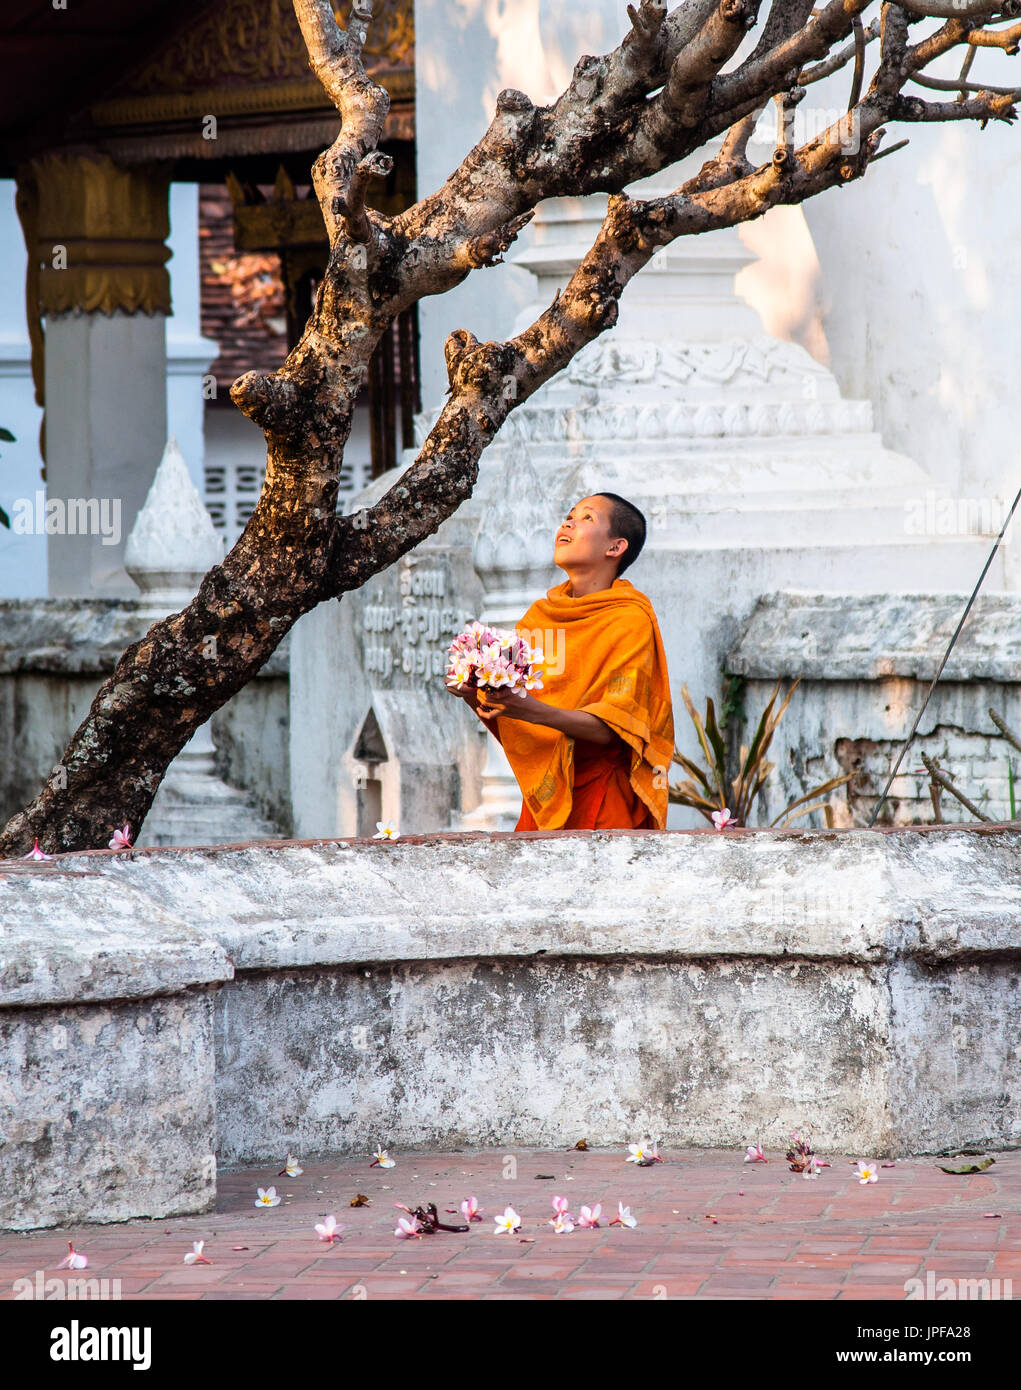 LUANG Prabang, Laos - Febbraio 17, 2013: Monk picking fiori di frangipani Foto Stock